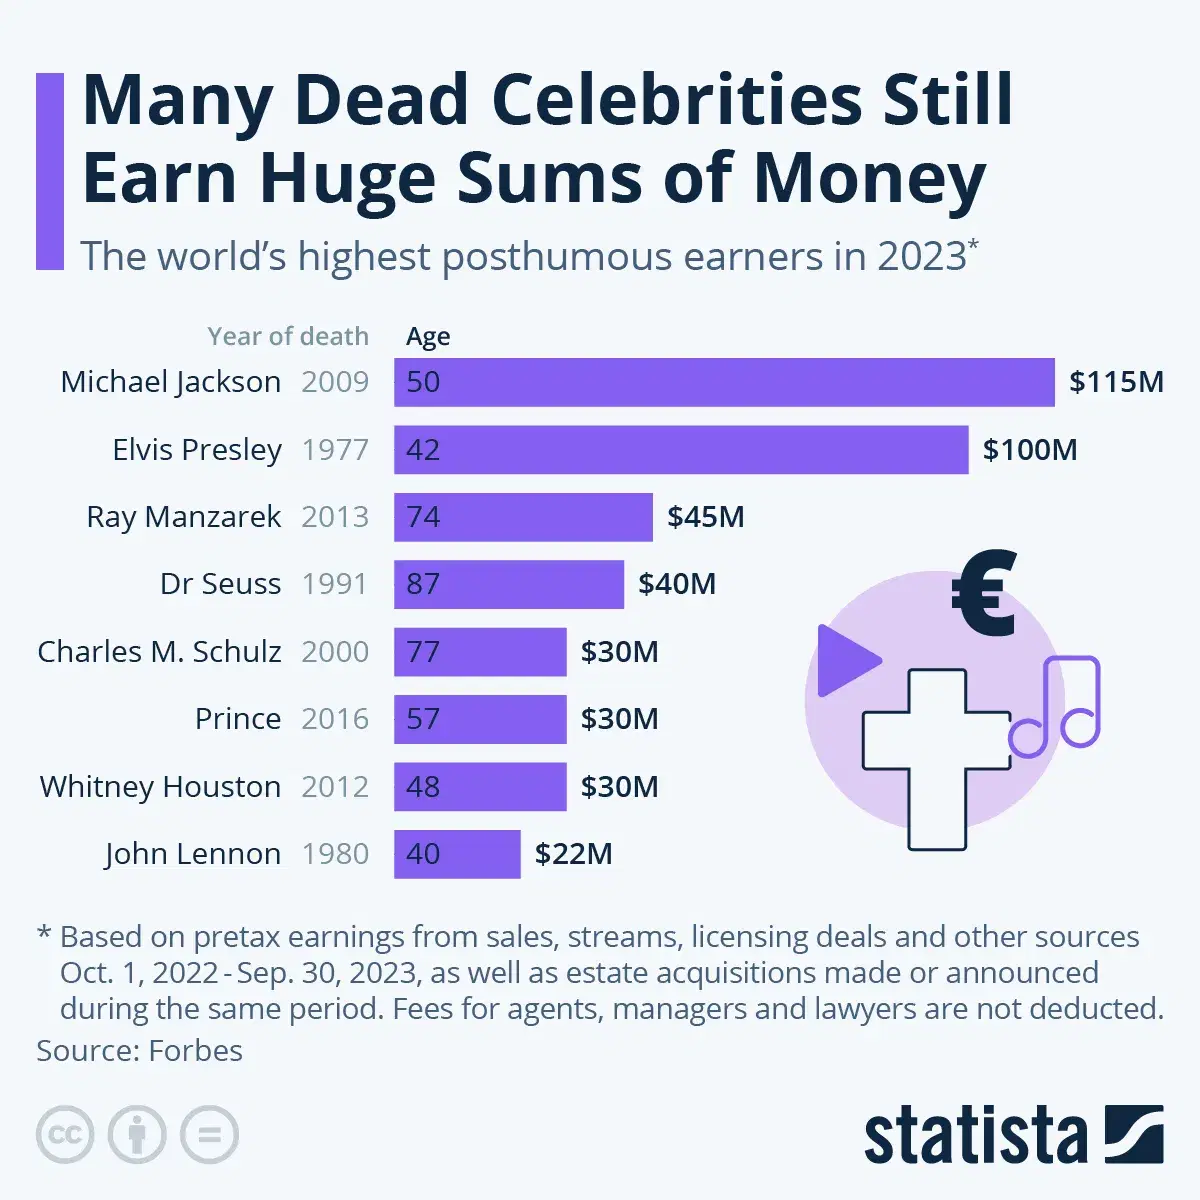 Many Dead Celebrities Still Earn Huge Sums of Money